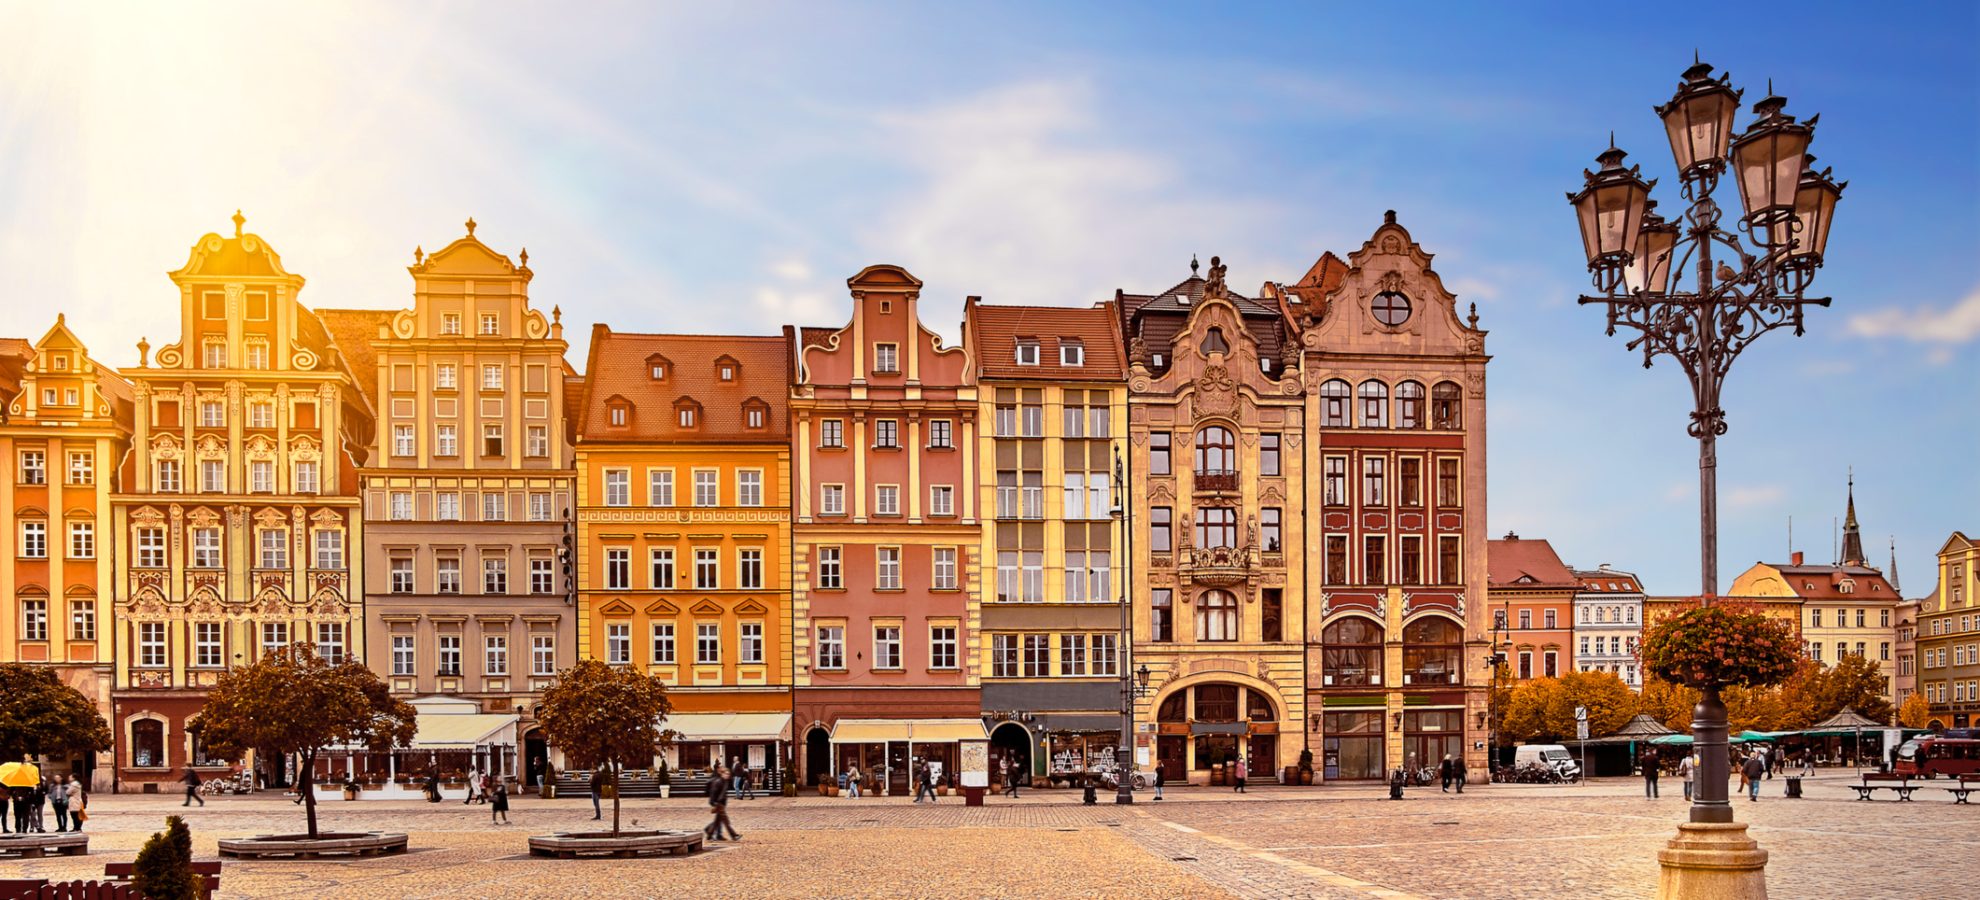 Centrale marktplein in Wroclaw Polen met oude kleurrijke huizen